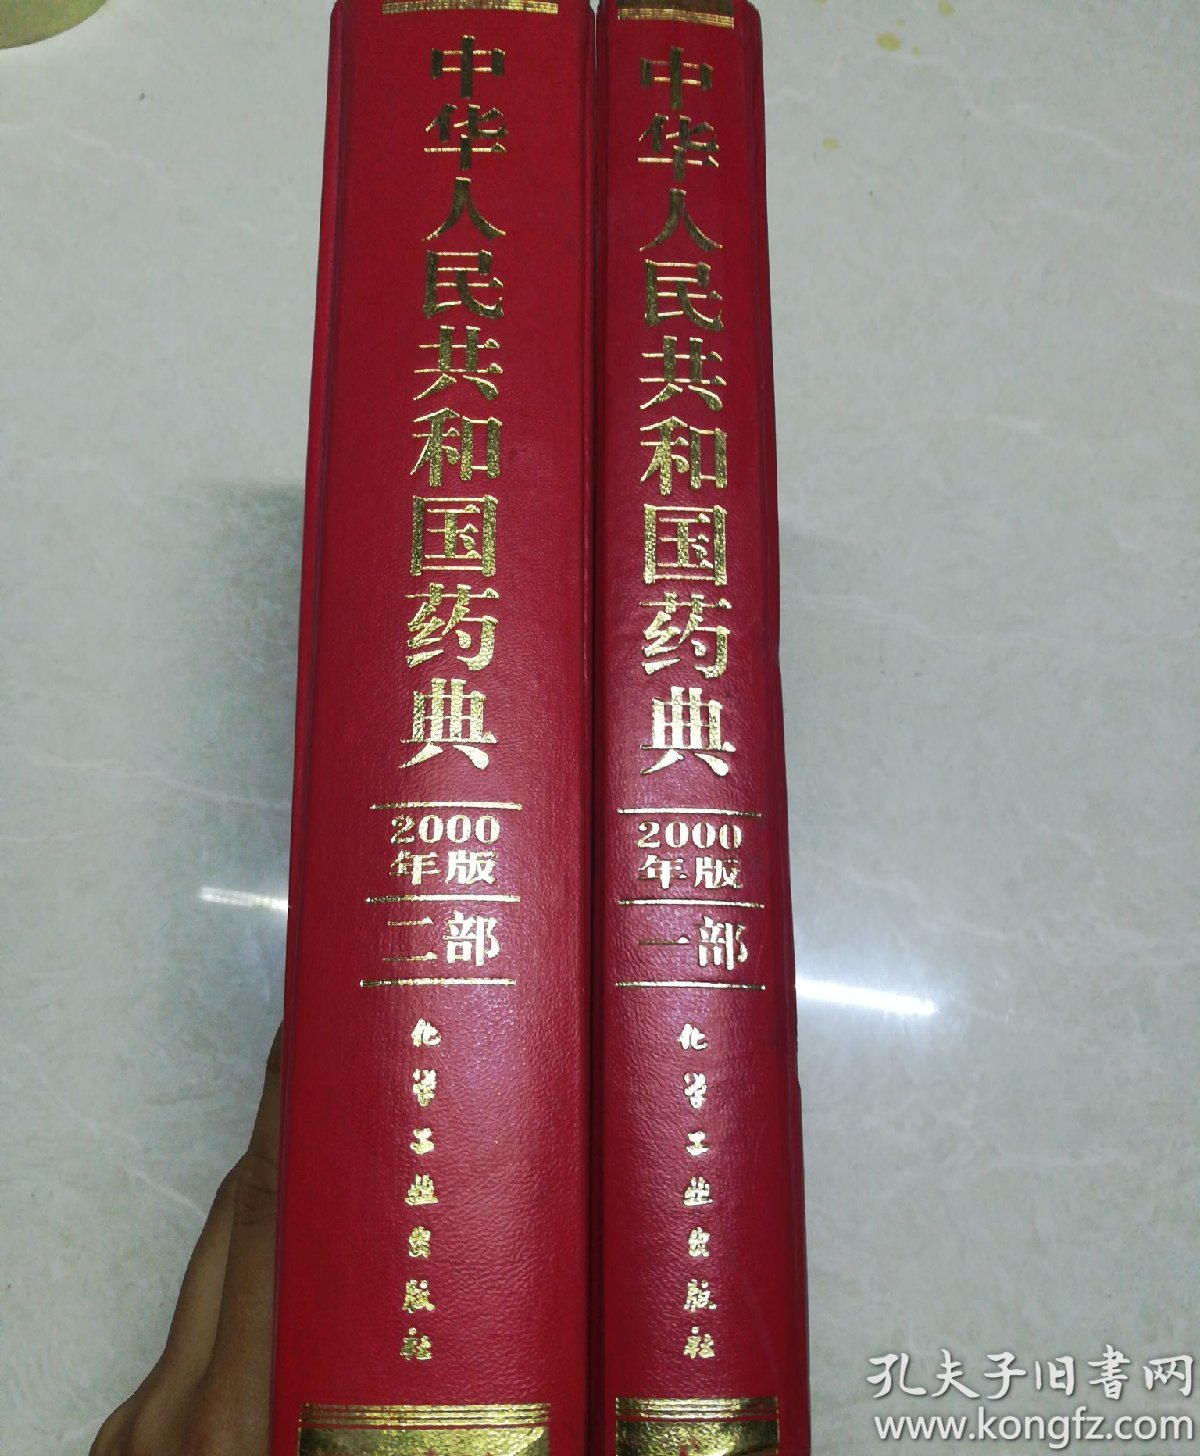 中华人民共和国药典(2000年版一、二部)〔硬精